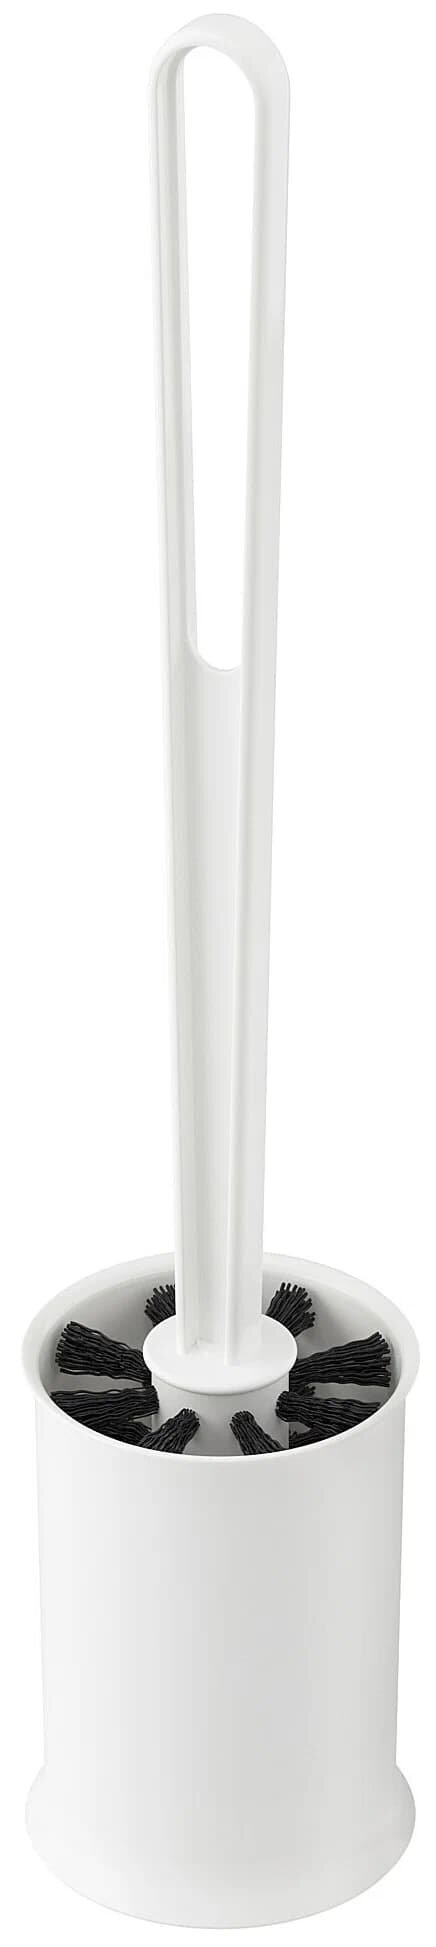 Щетка для унитаза, белый, икеа таккан, IKEA TACKAN - фотография № 1